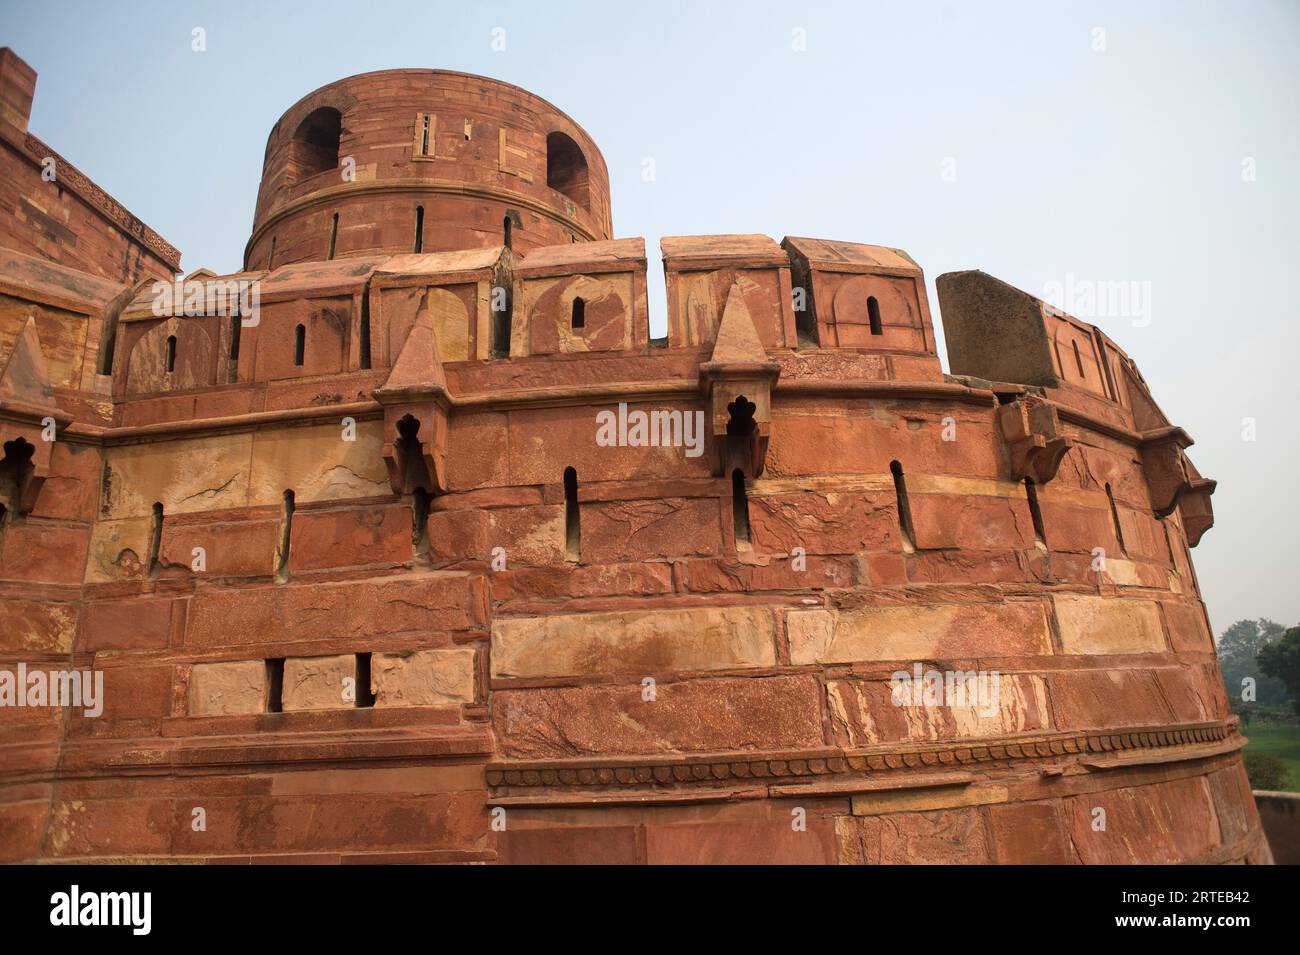 Teil des Roten Fort von Agra, ein Weltkulturerbe in Agra, Indien; Agra, Uttar Pradesh, Indien Stockfoto